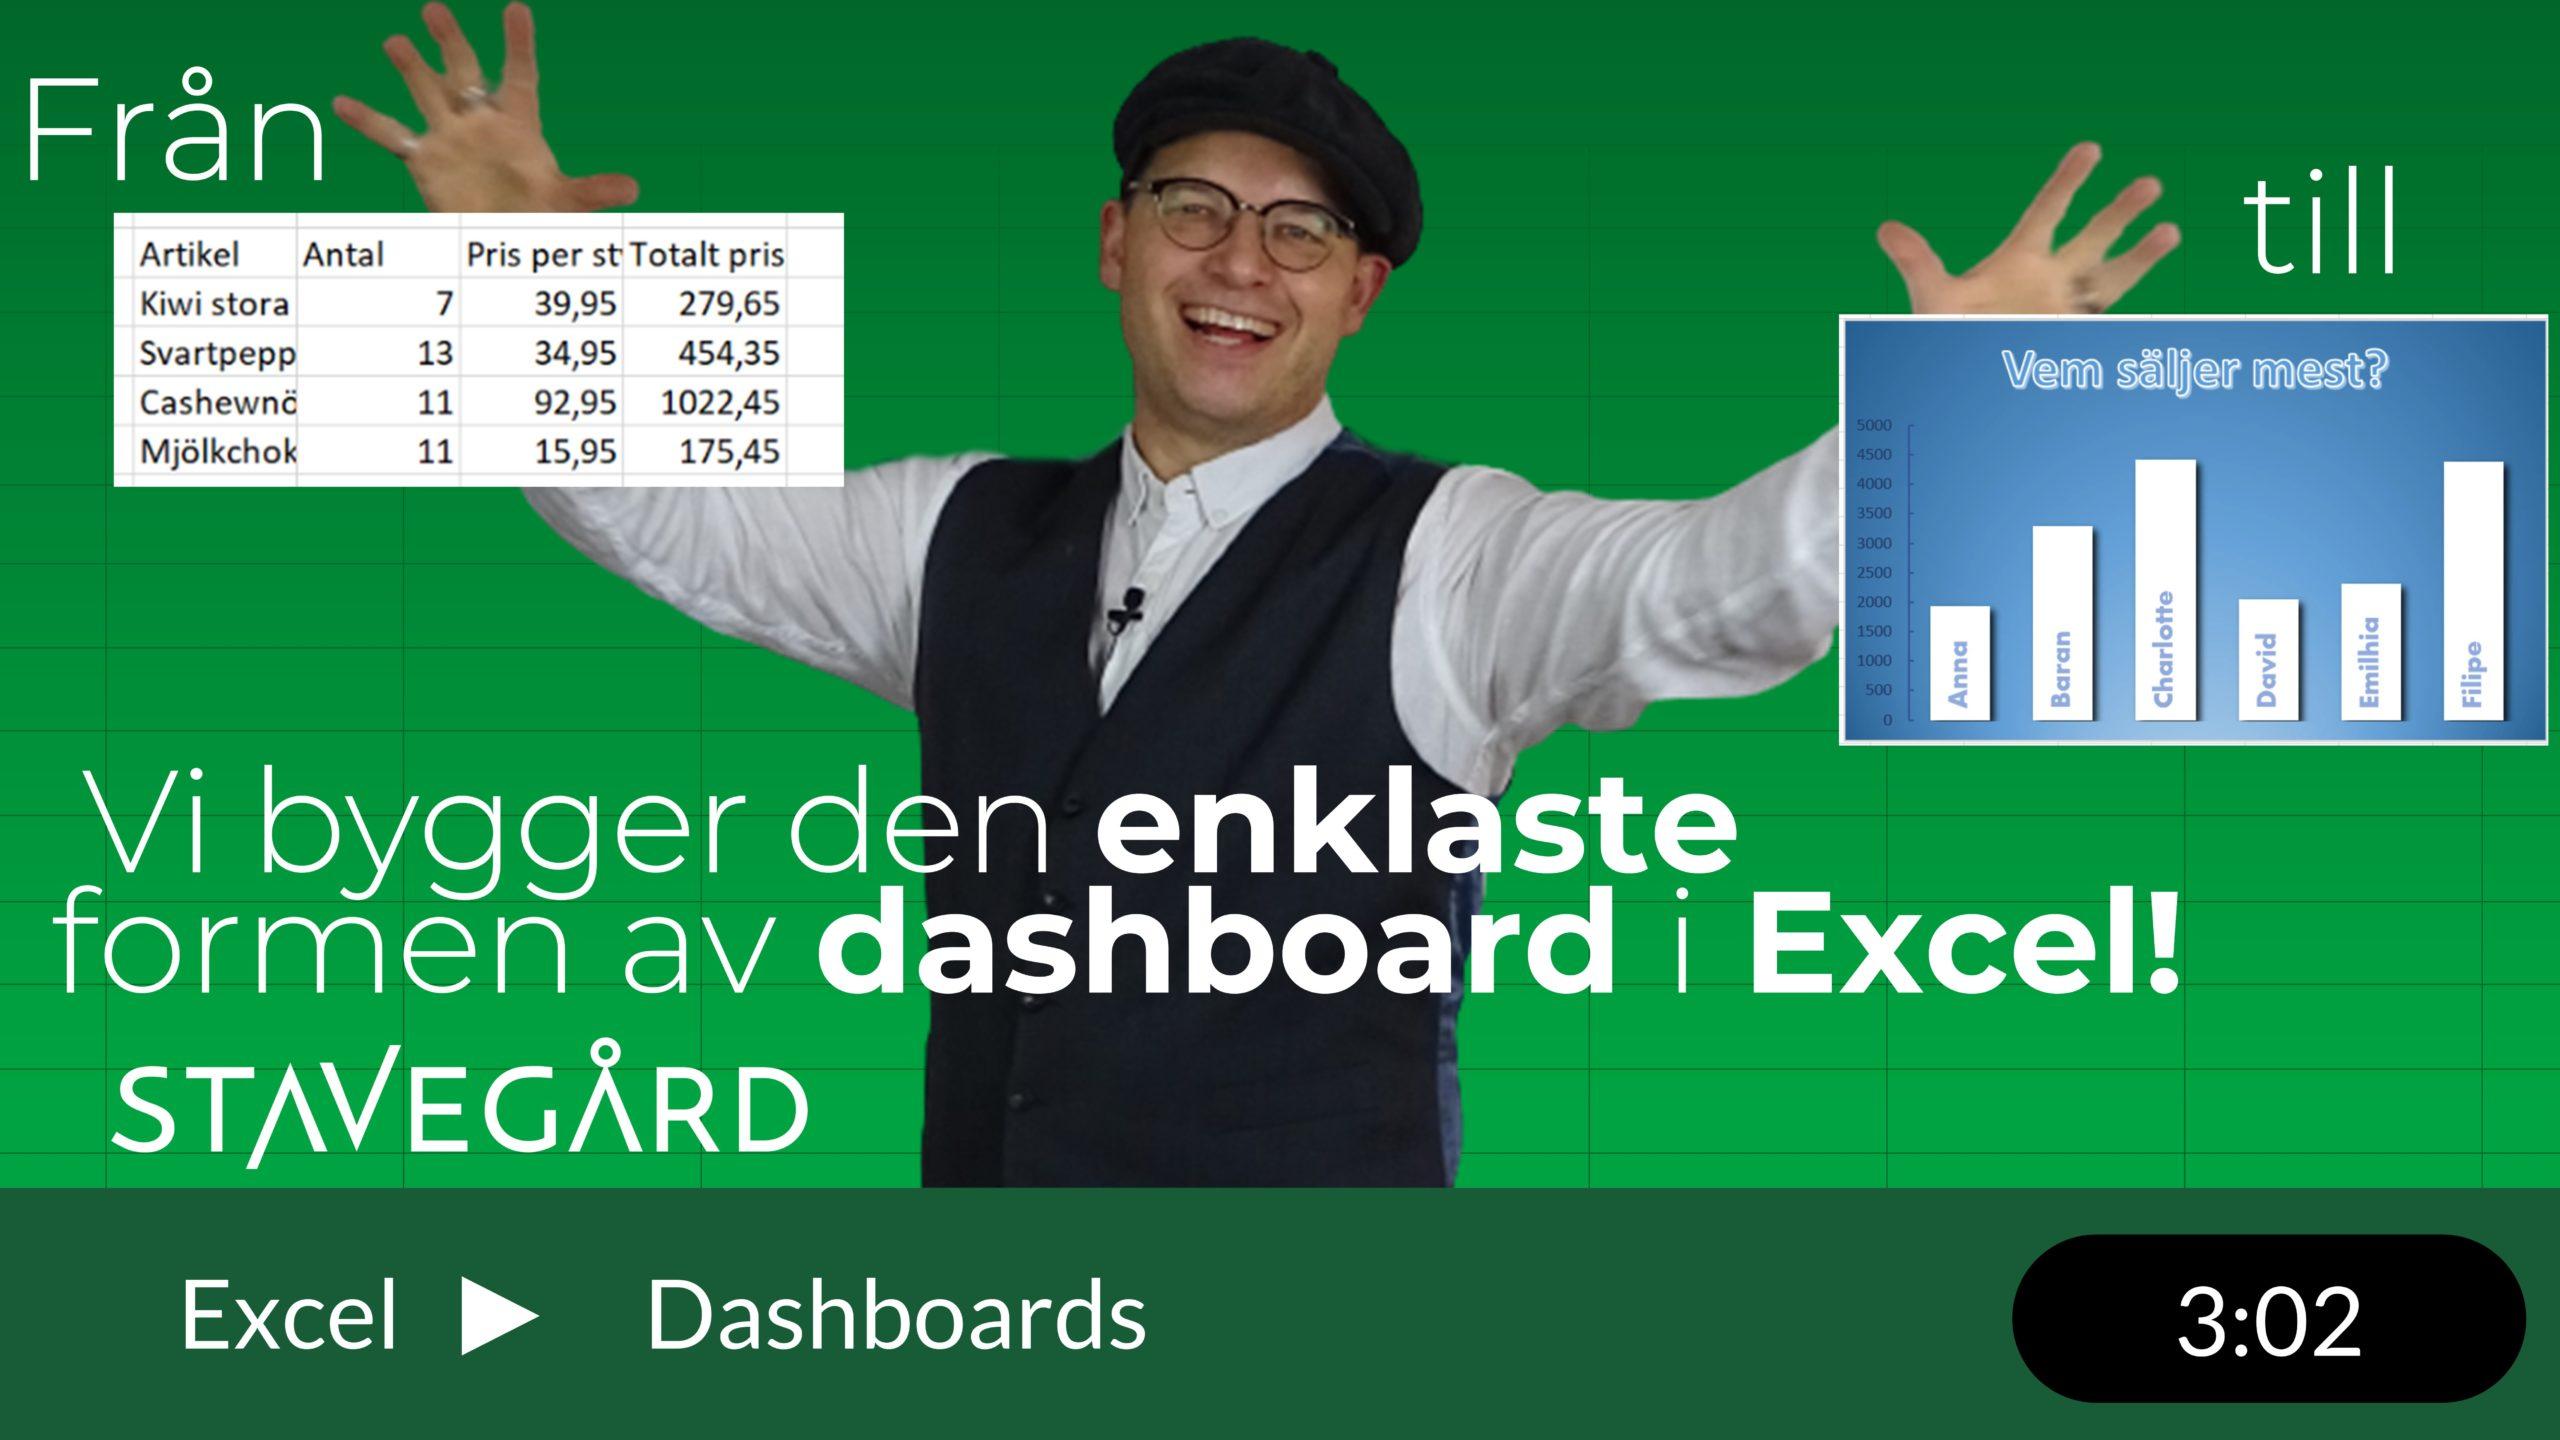 En grund för att bygga en dashboard i Excel